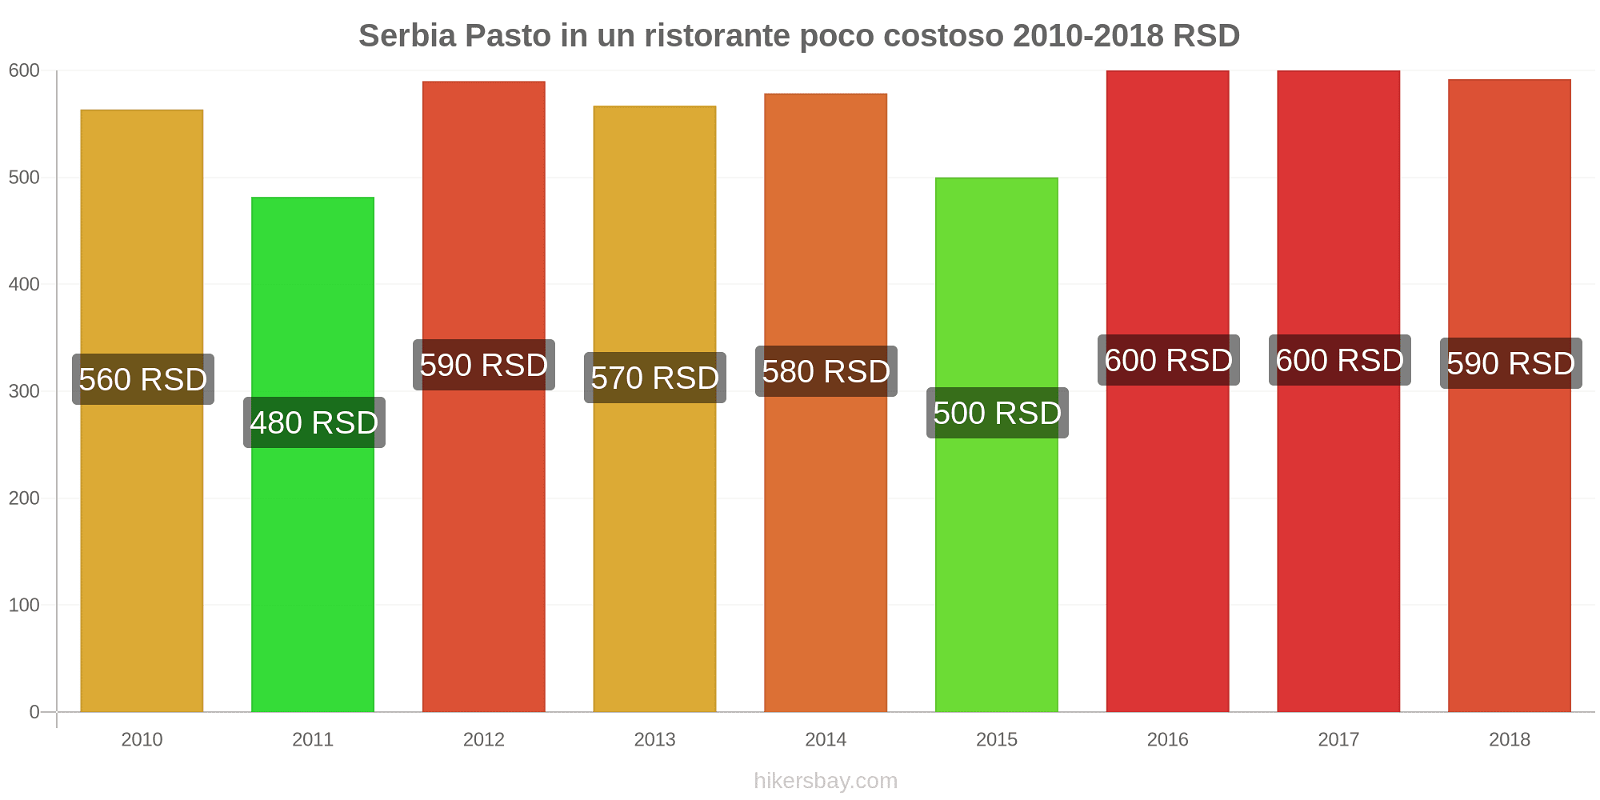 Serbia cambi di prezzo Pasto in un ristorante economico hikersbay.com